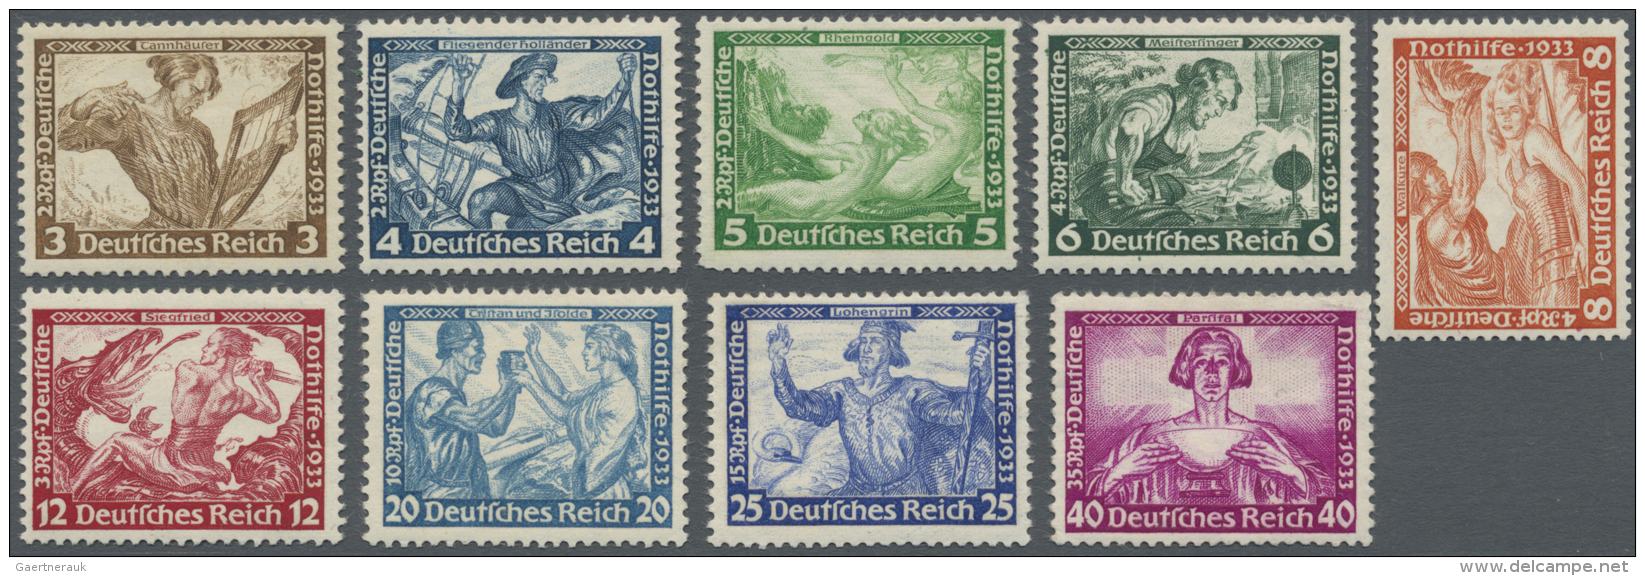 Deutsches Reich - 3. Reich: 1933: Wagner 3 Pfg. Bis 40 Pfg., Postfrischer Kabinettsatz Billigst Gerechnet Michel 2.400,- - Neufs